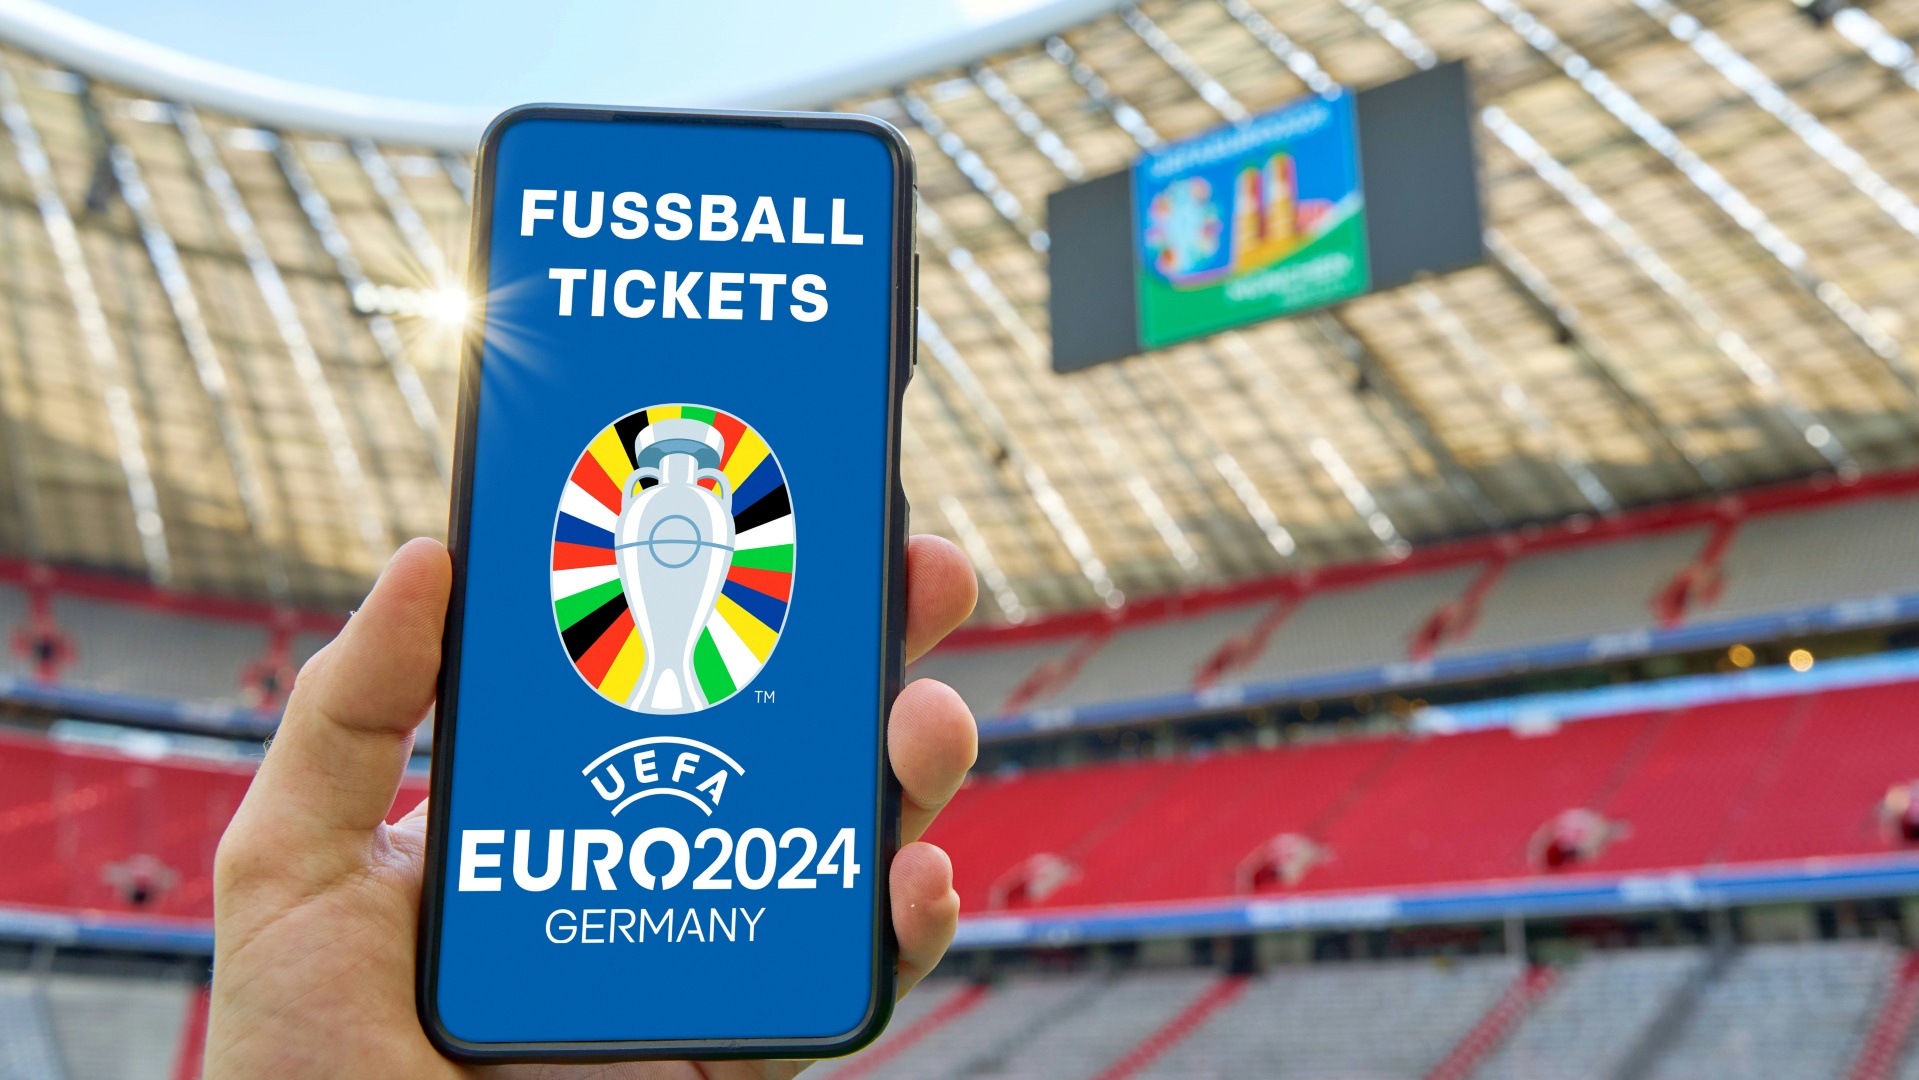 Die UEFA verkauft die Tickets für die Fußball-EM 2024 über ein eigenes Portal